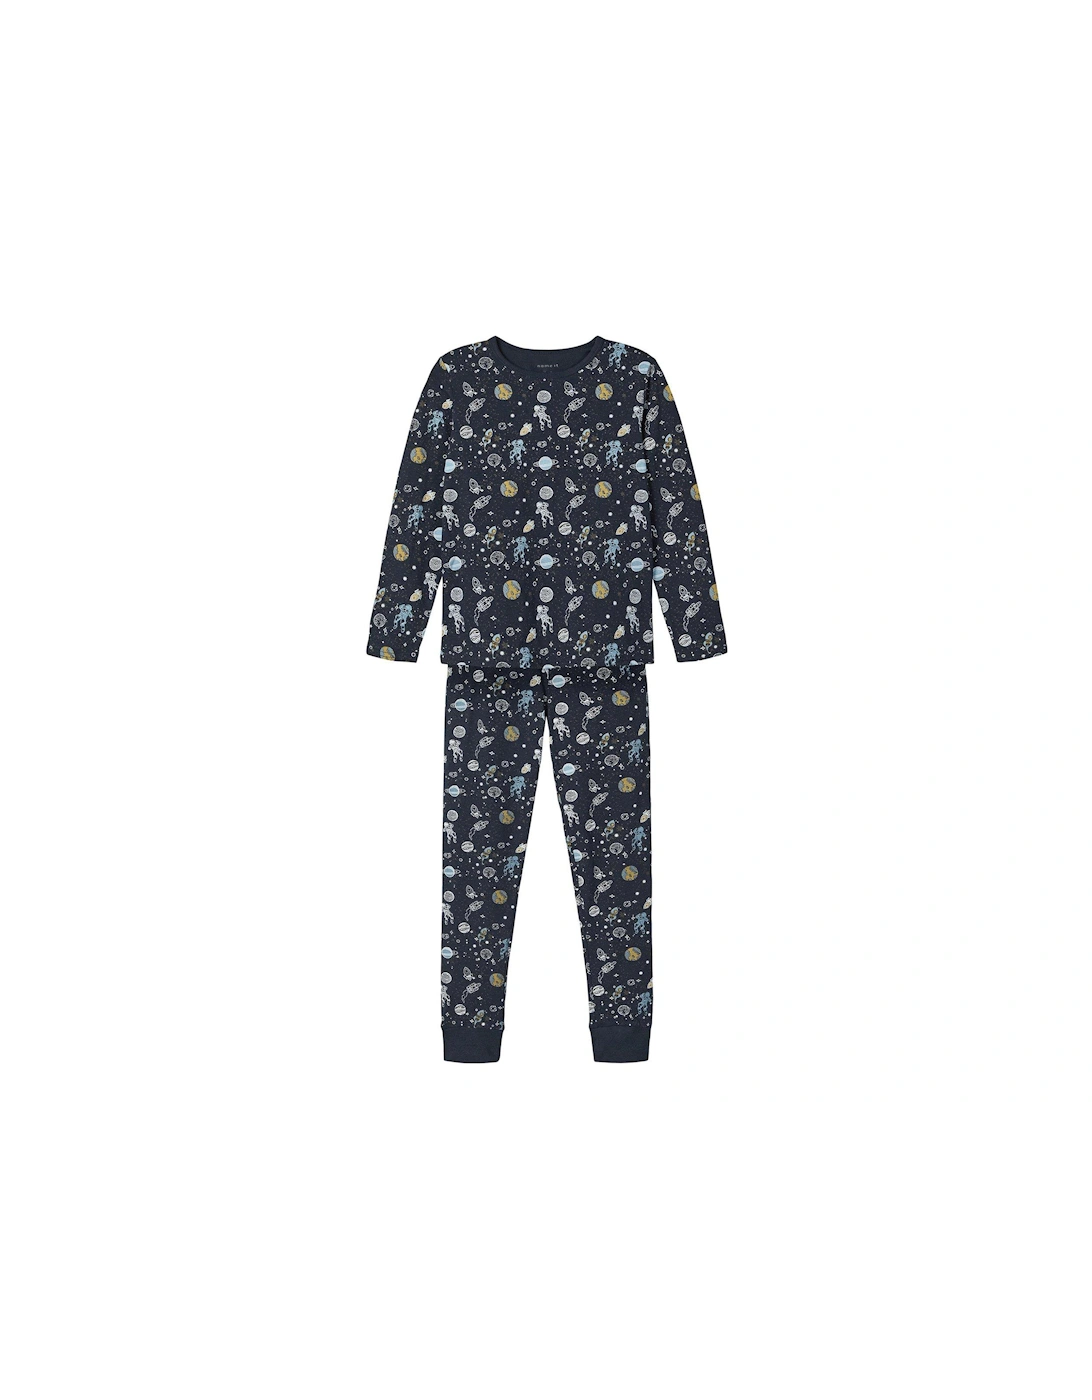 Boys Space Print Pyjamas - Dark Sapphire, 3 of 2